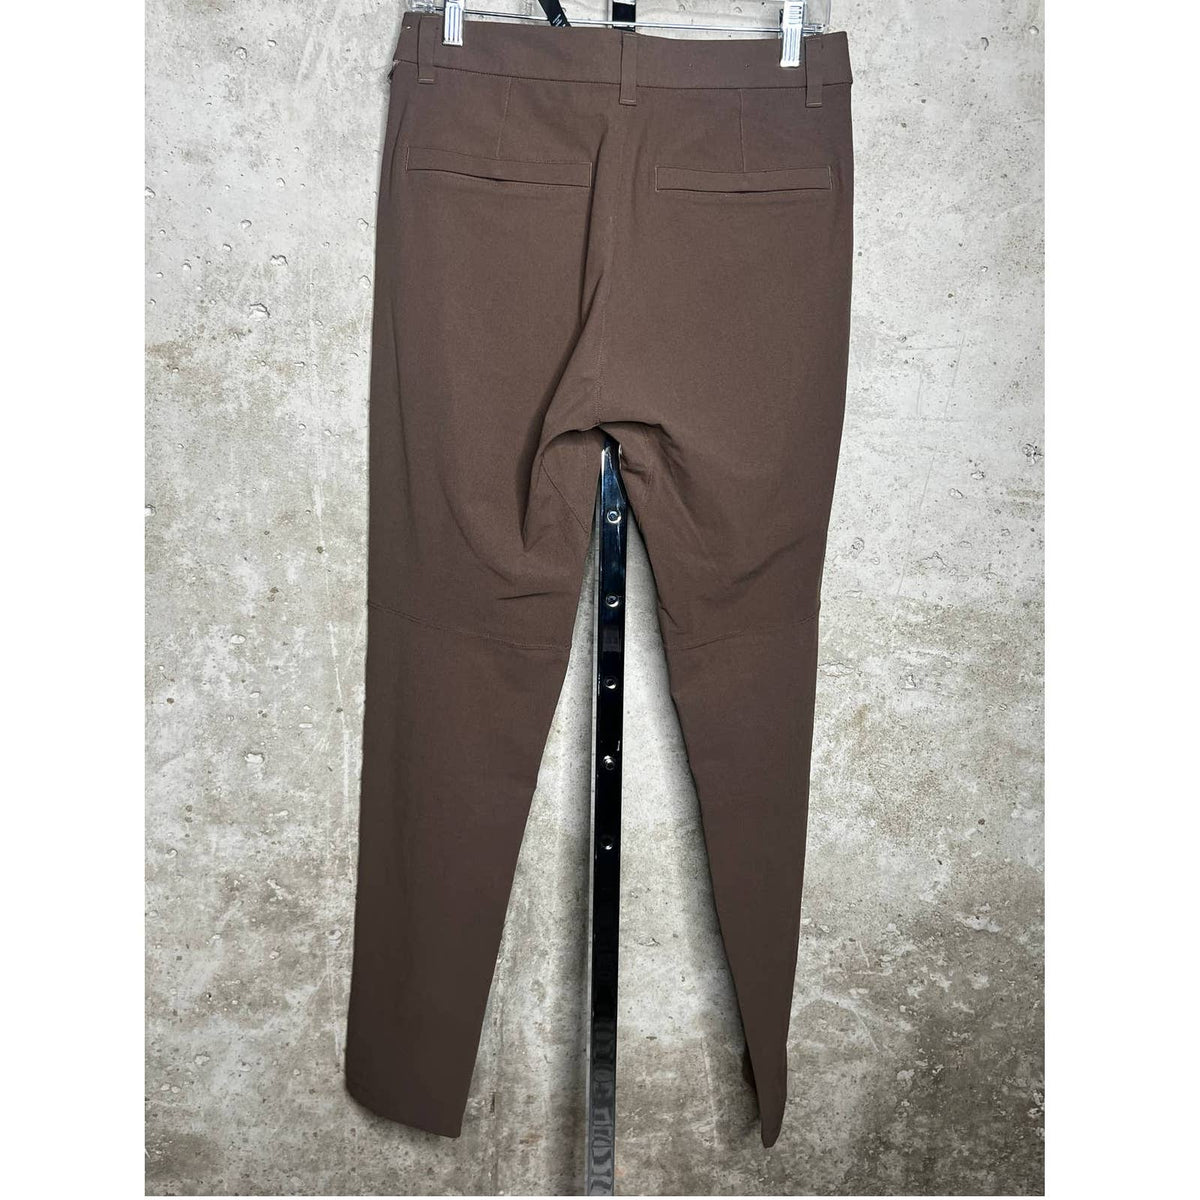 Lululemon ABC 32” Brown Men’s Pants Sz.30